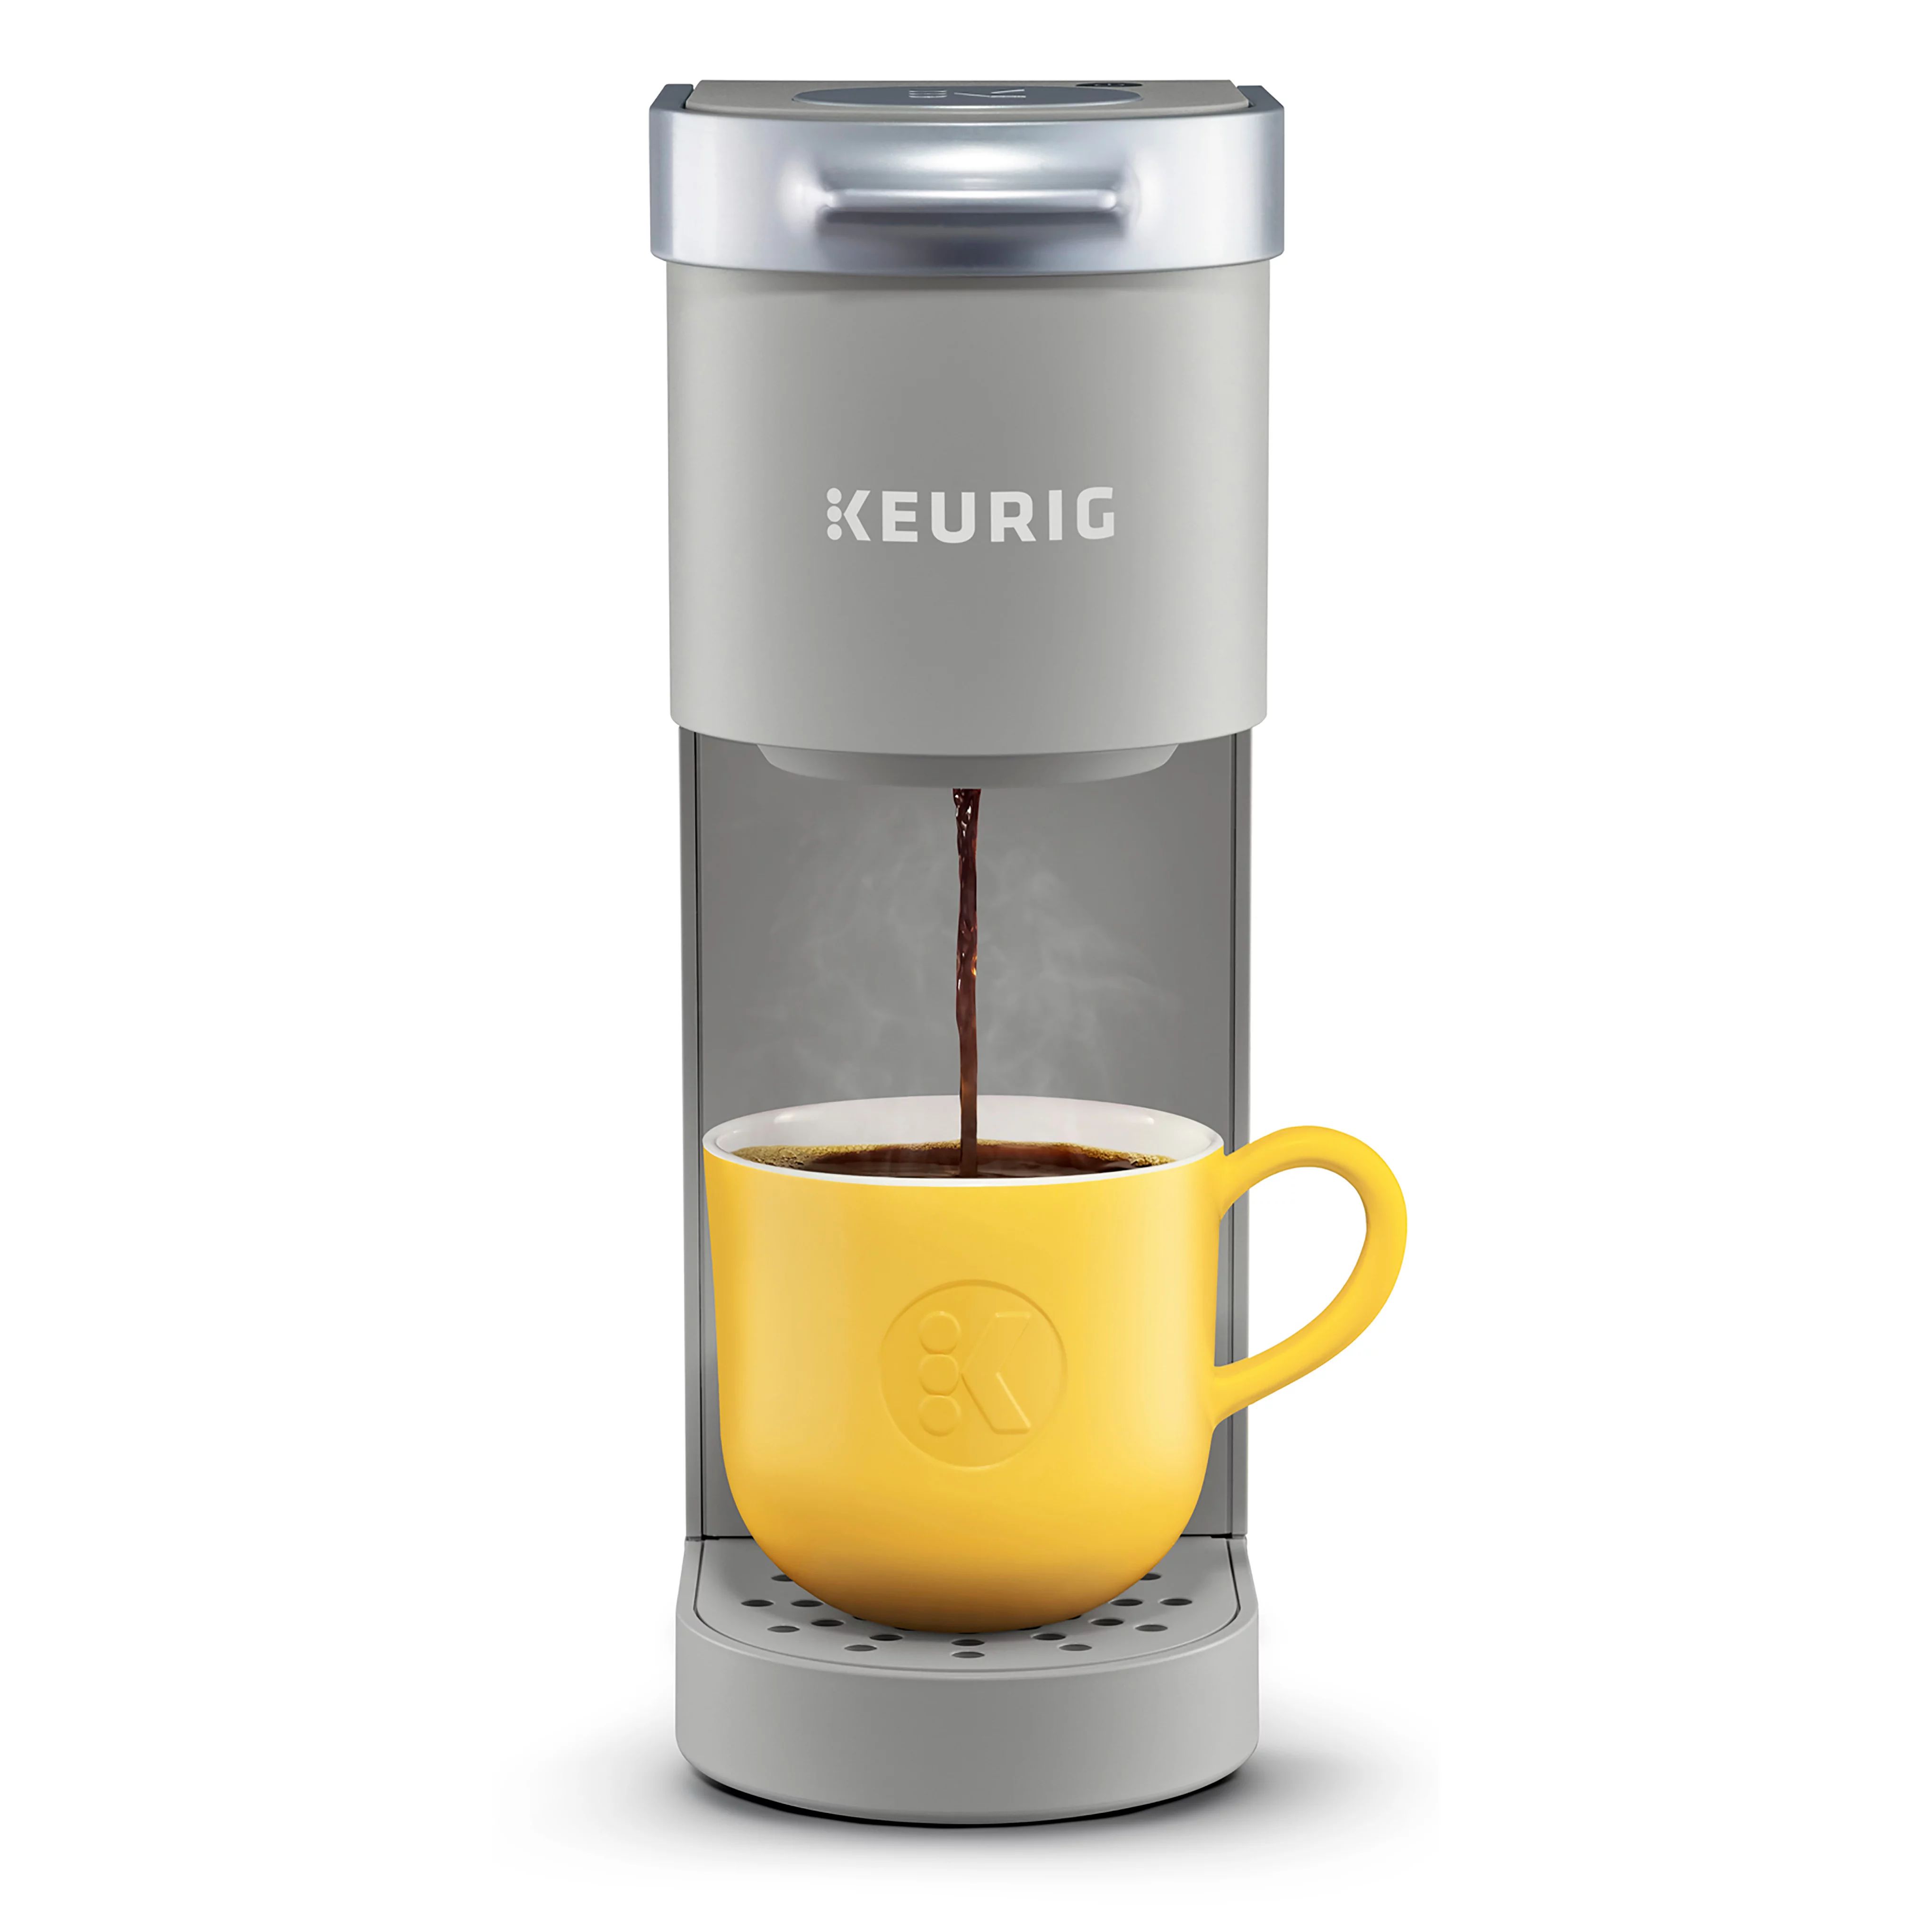 Keurig K-Mini Single Serve Coffee Maker, Studio Gray | Walmart (US)